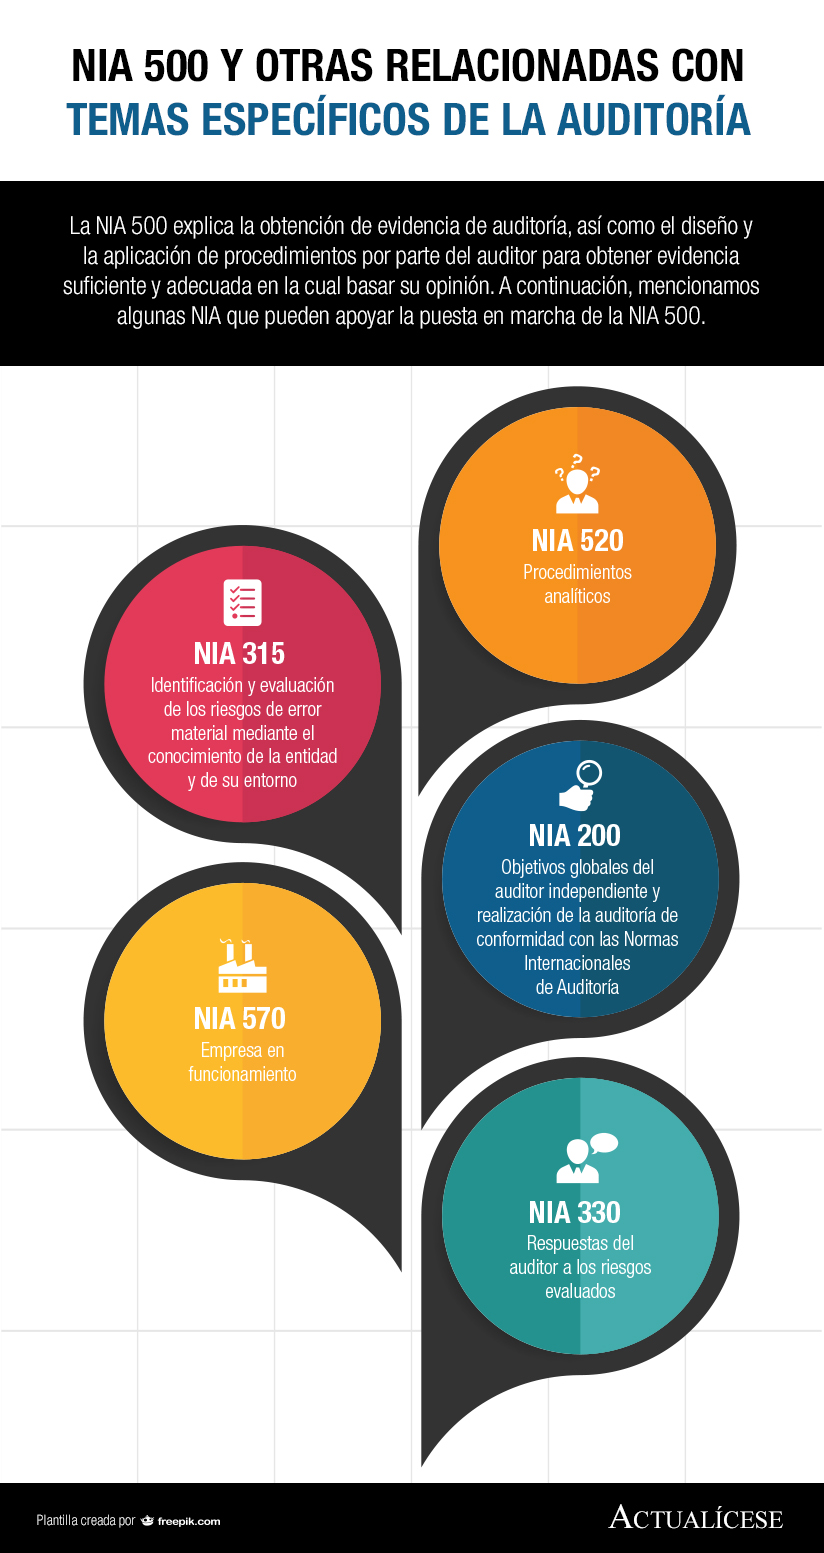 [Infografía] NIA 500 y otras relacionadas con temas específicos de la auditoría